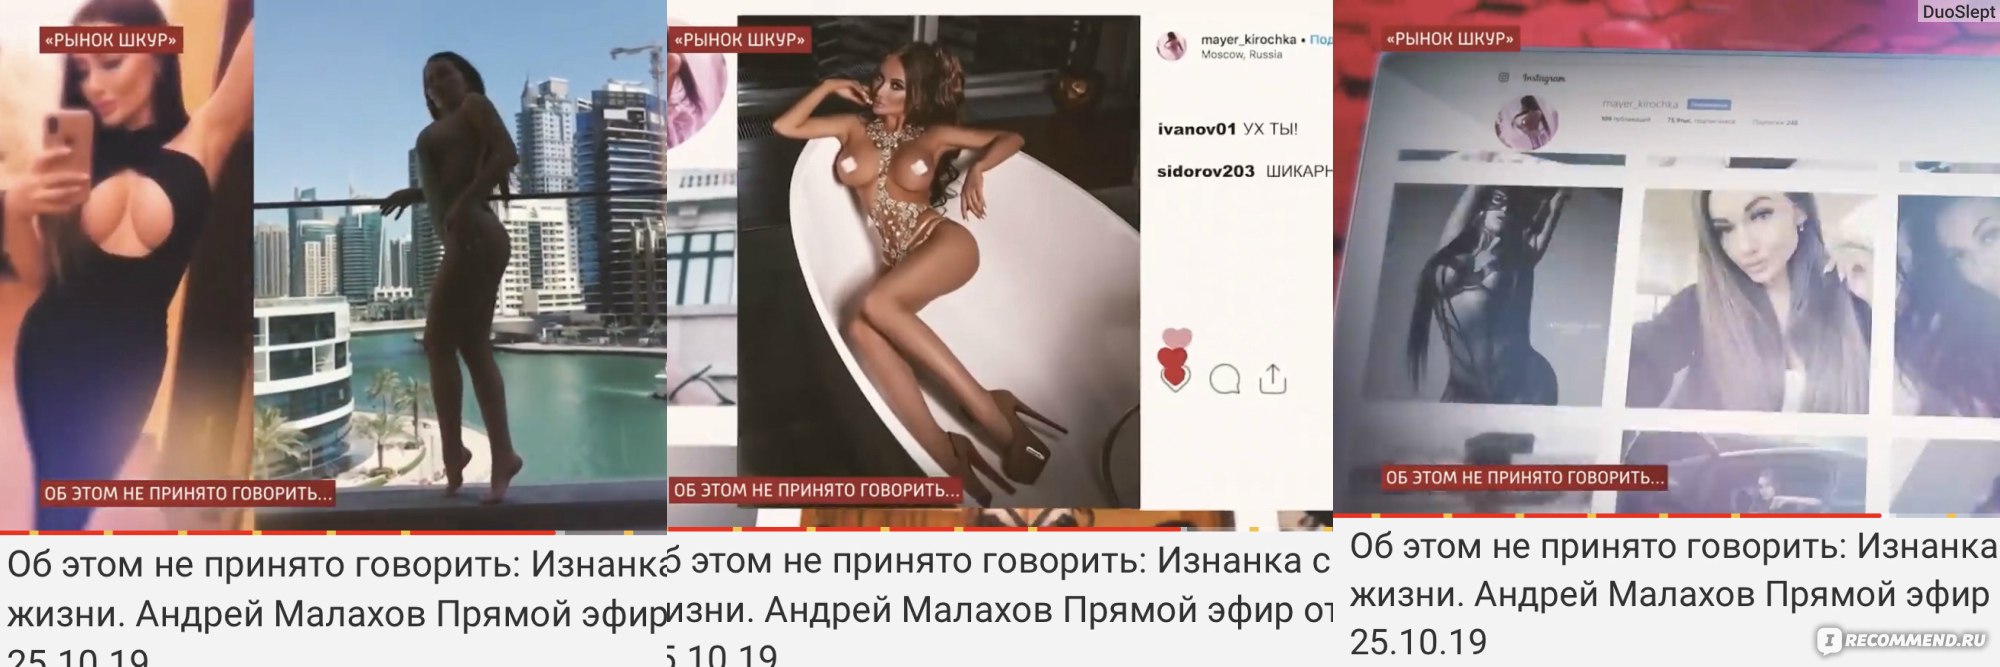 Проститутки Ростова Полторы 1000